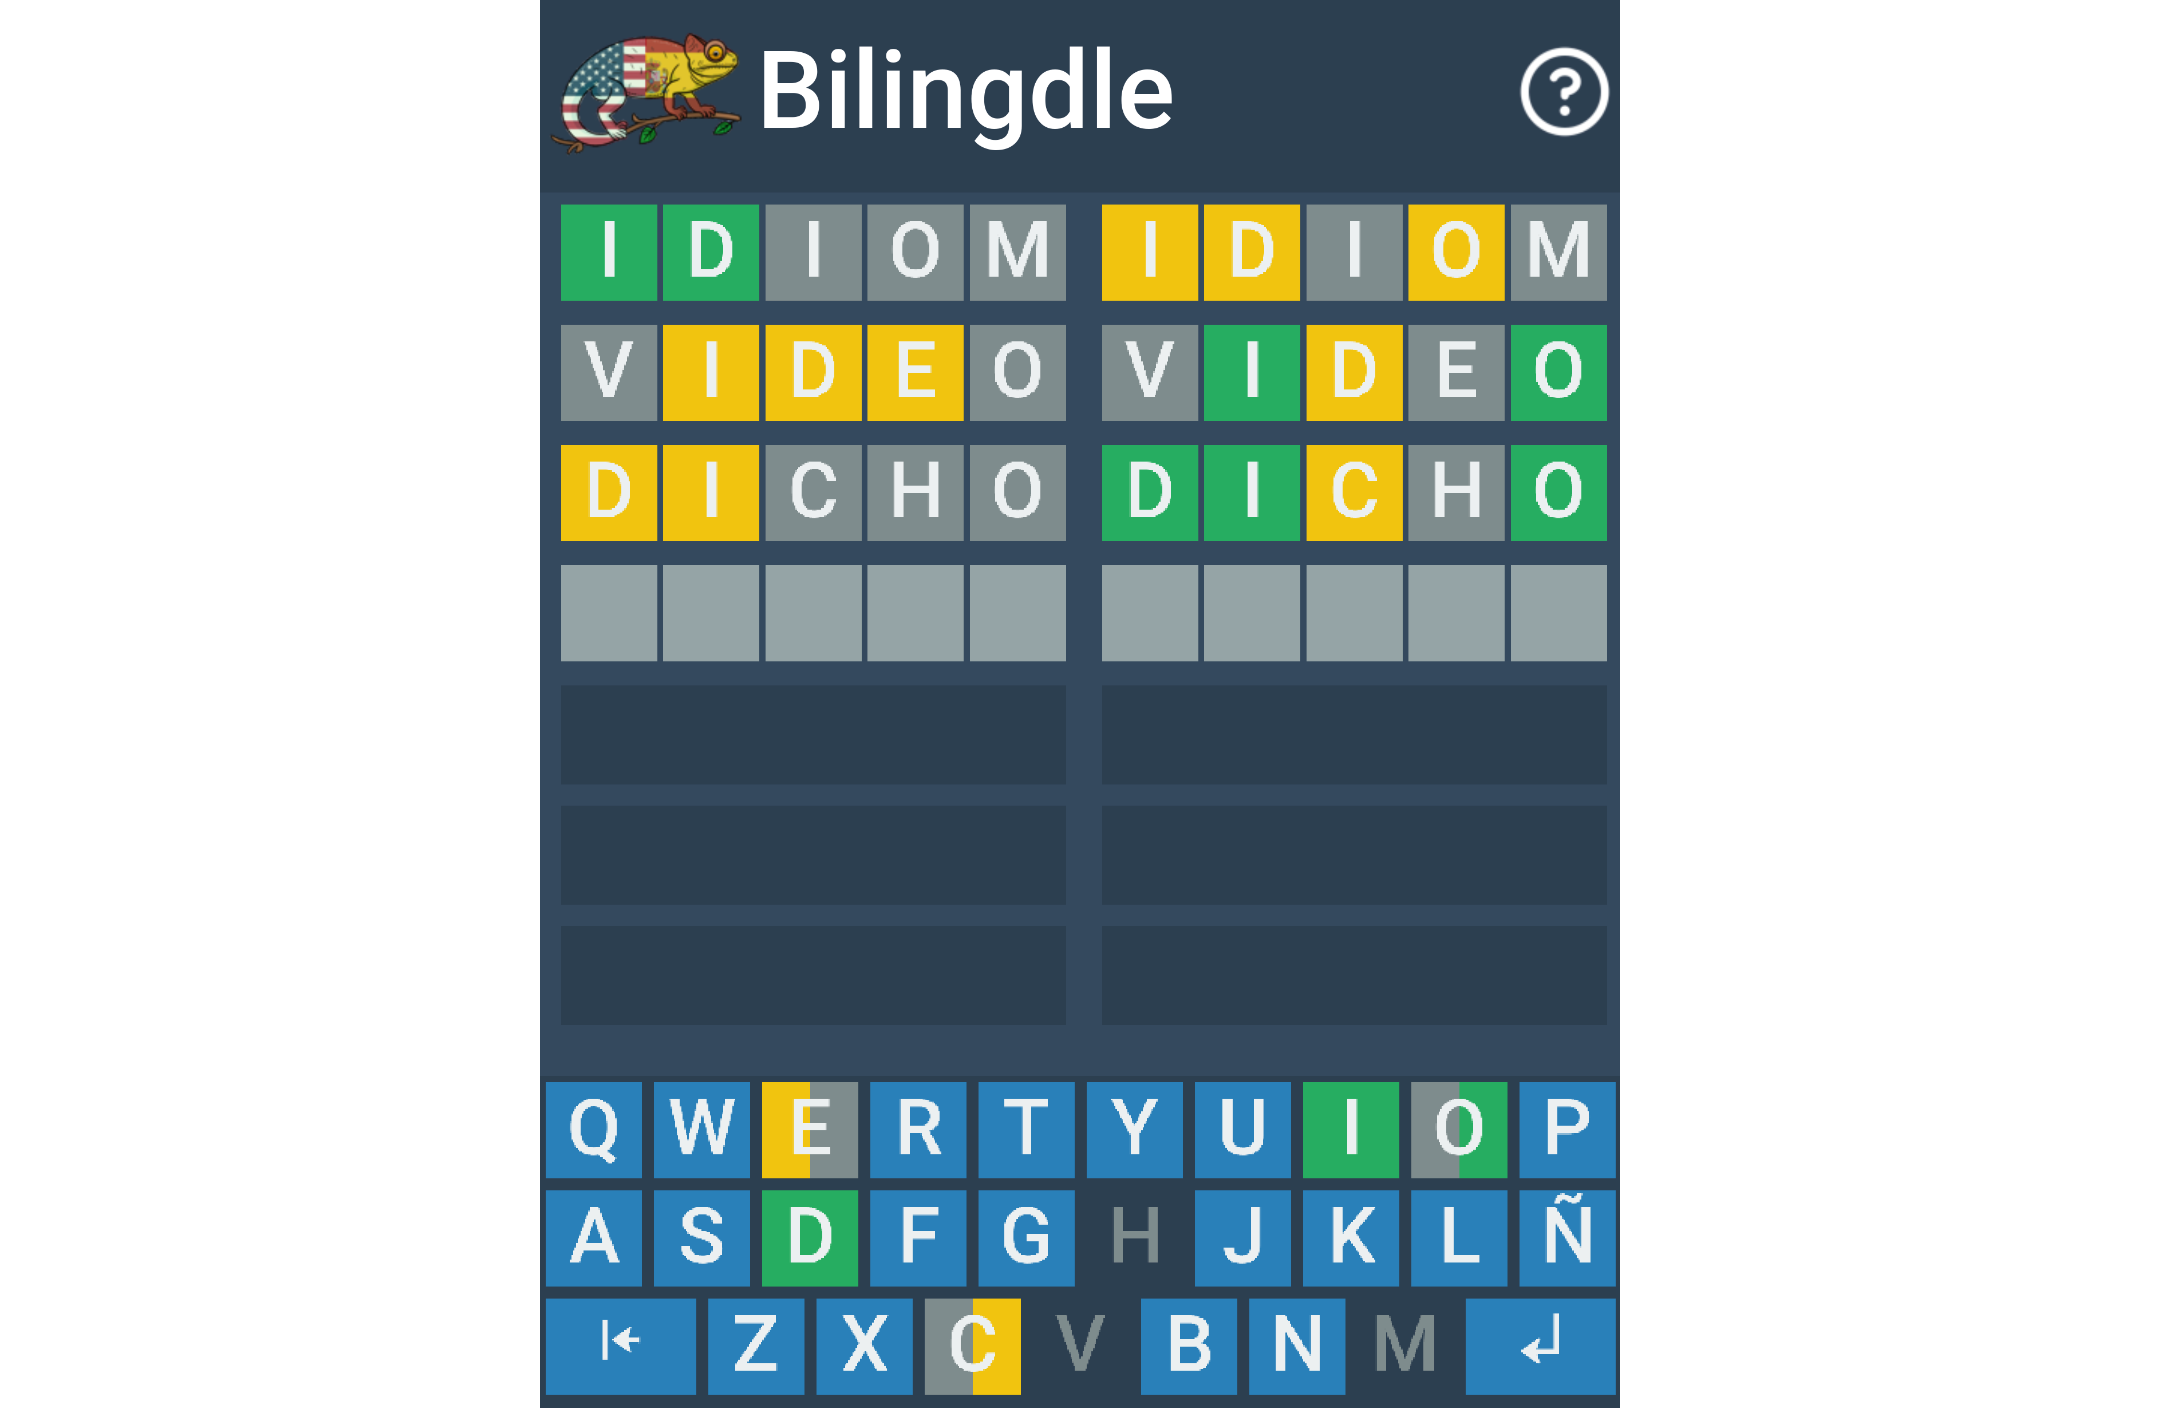 Bilingdle